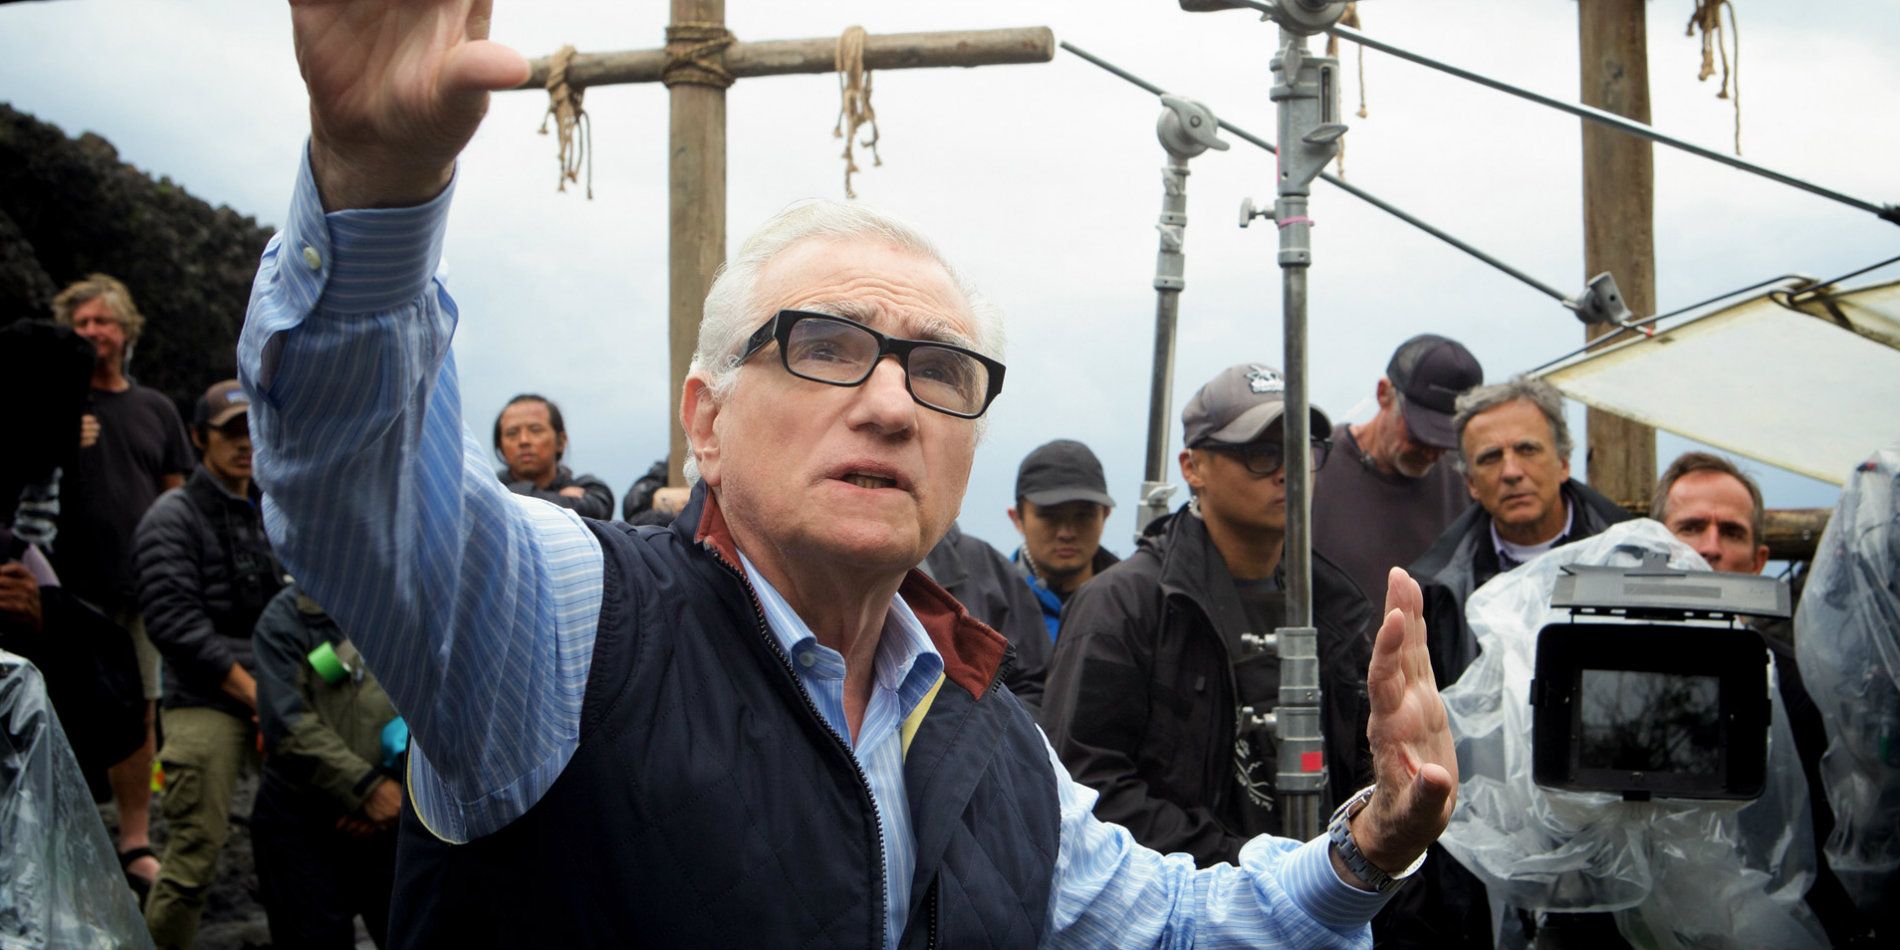 Martin Scorsese directing Silence